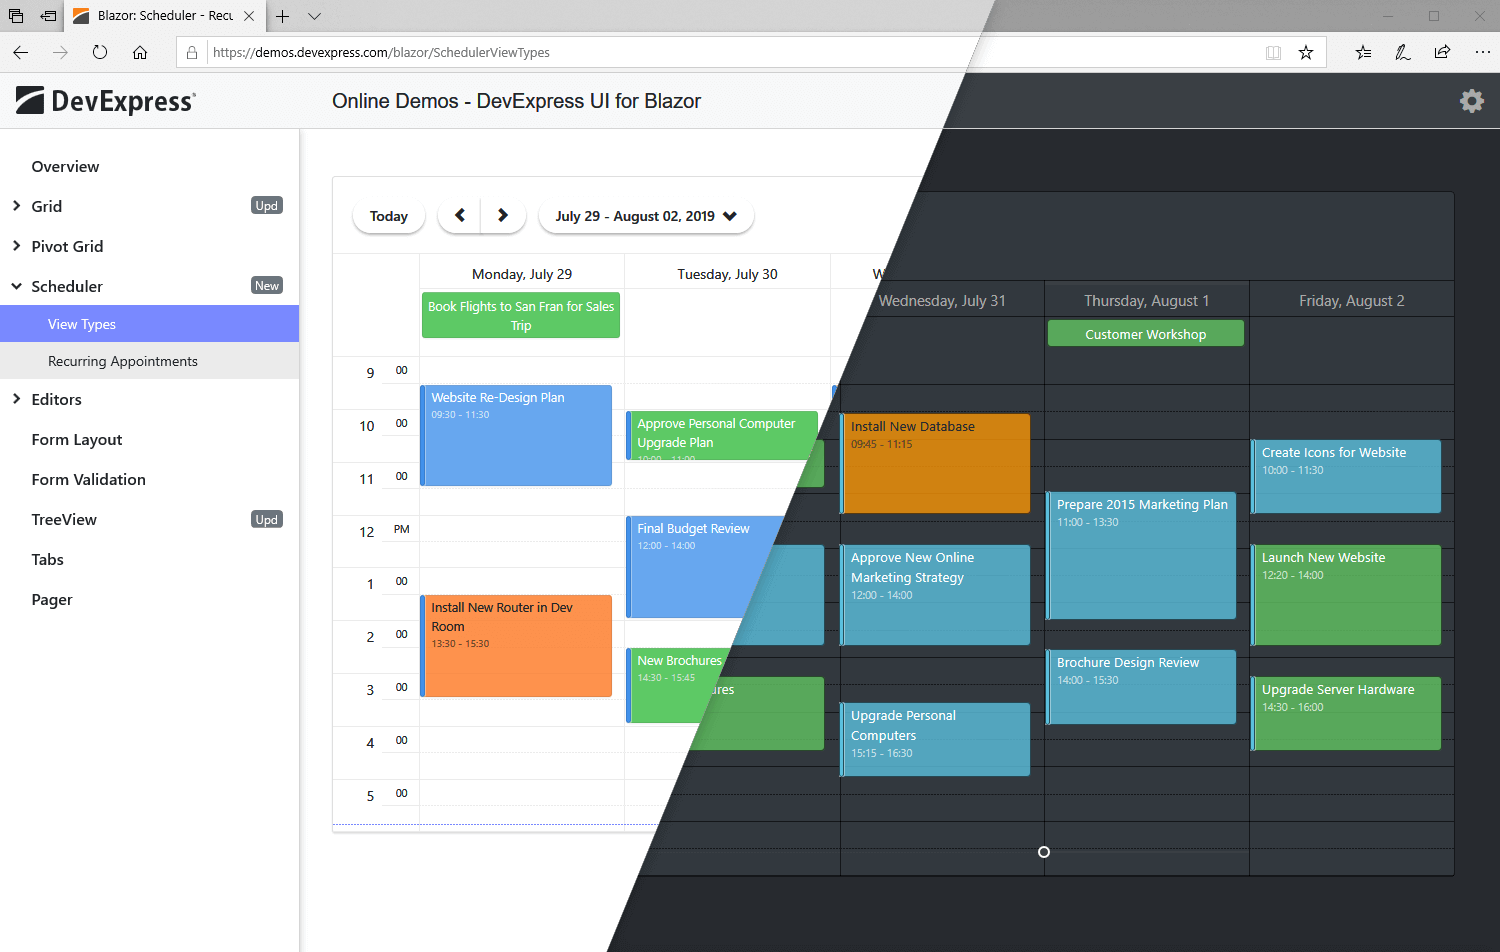 Blazor Scheduler UI Component - Themes, DevExpress